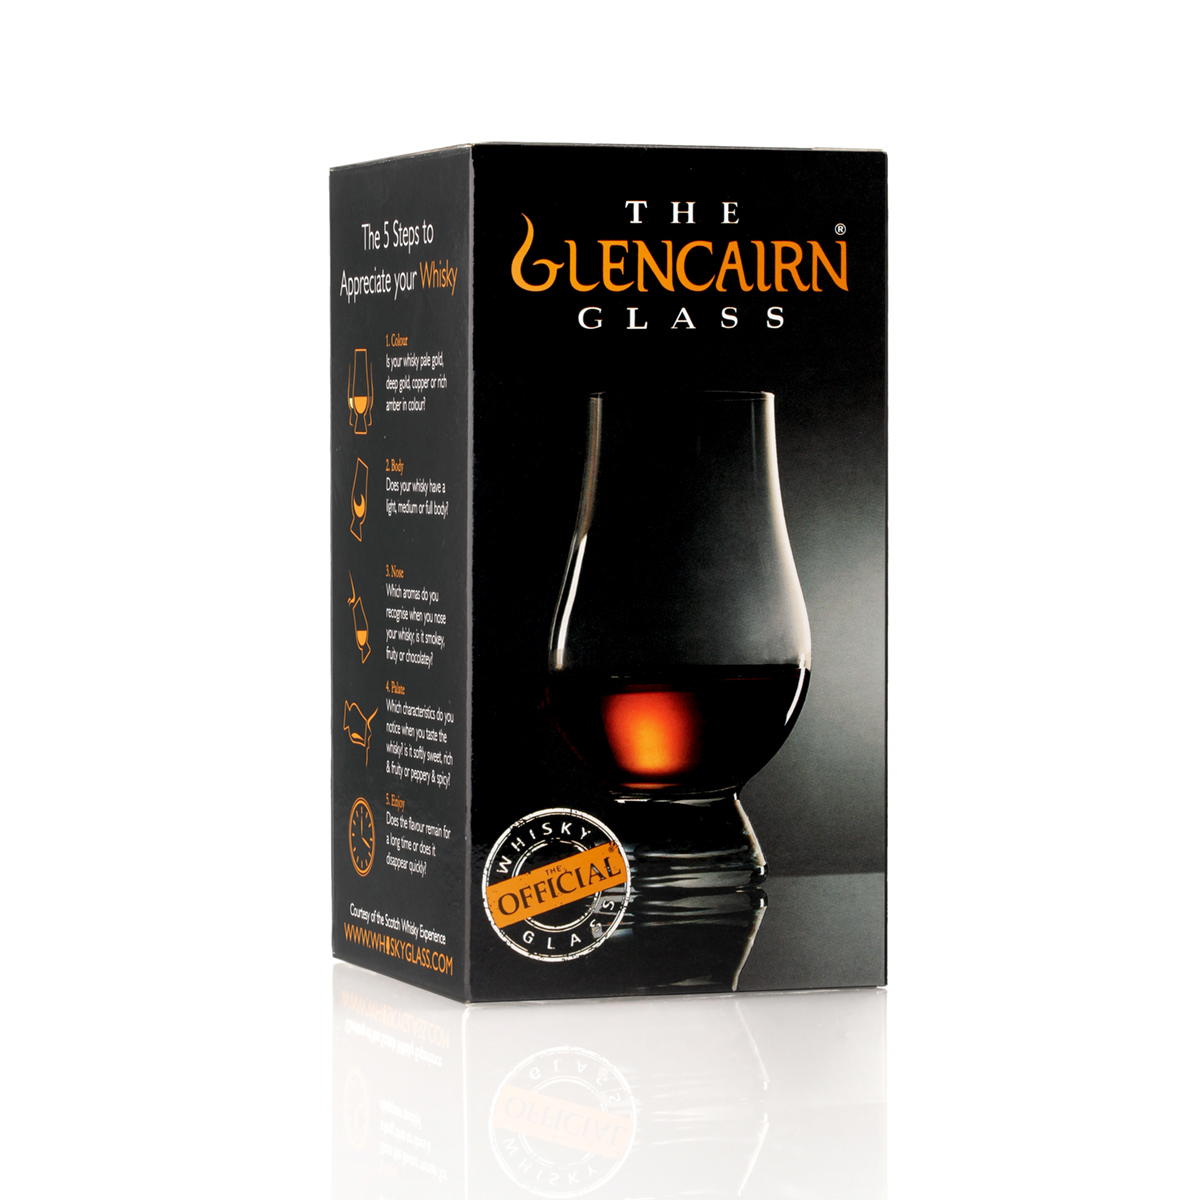 Glencairn Whisky Tasting Glas mit Gravur 'London'